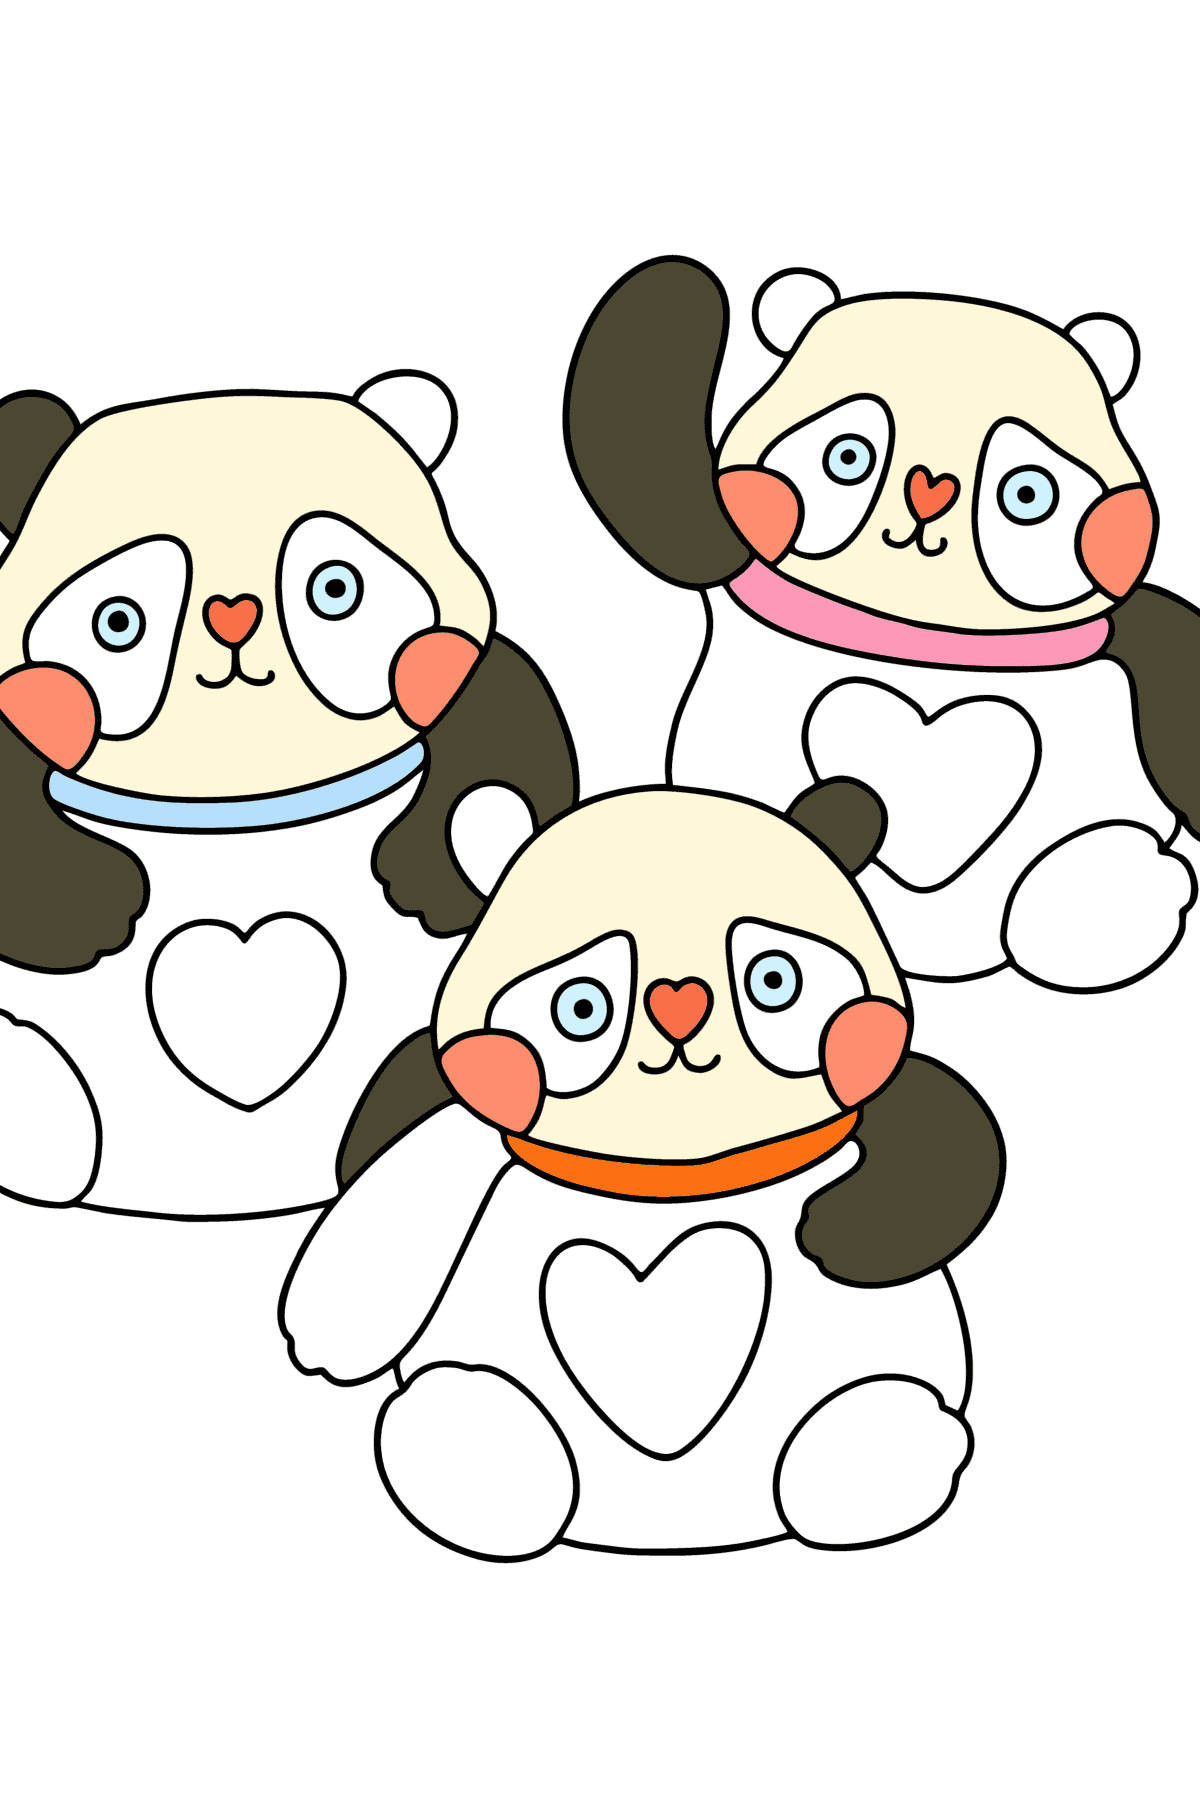 Disegno di panda kawaii da colorare - Disegni da colorare per bambini